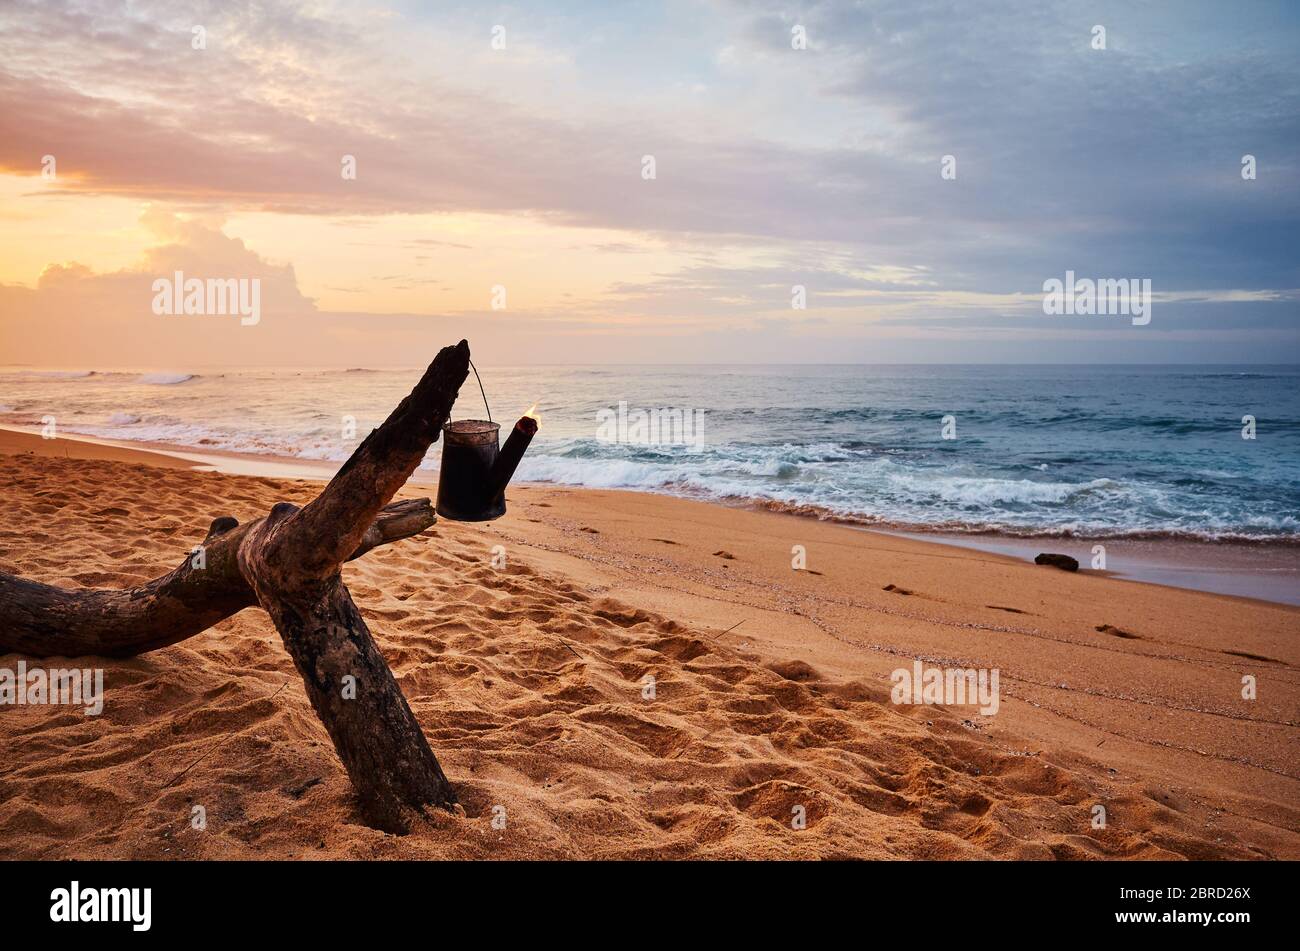 Tropischer Strand mit brennendem Kessel auf einem Holzbalken bei Sonnenaufgang, Sri Lanka. Stockfoto